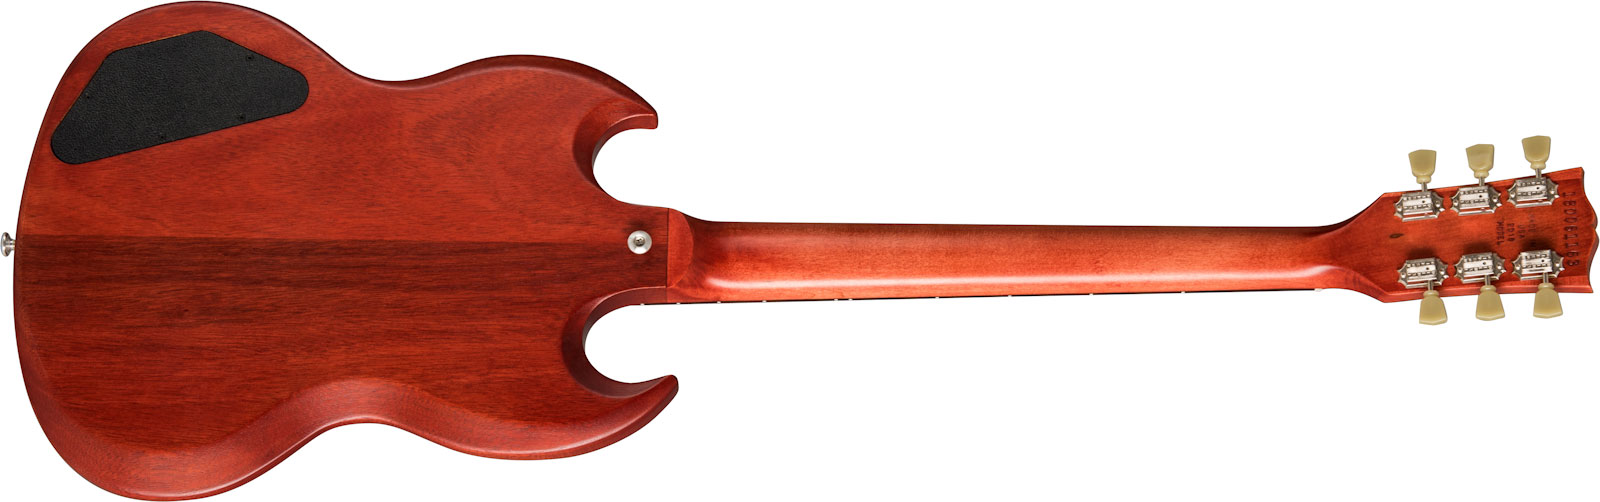 Gibson Sg Tribute Lh Modern Gaucher 2h Ht Rw - Vintage Cherry Satin - Linkshandige elektrische gitaar - Variation 1